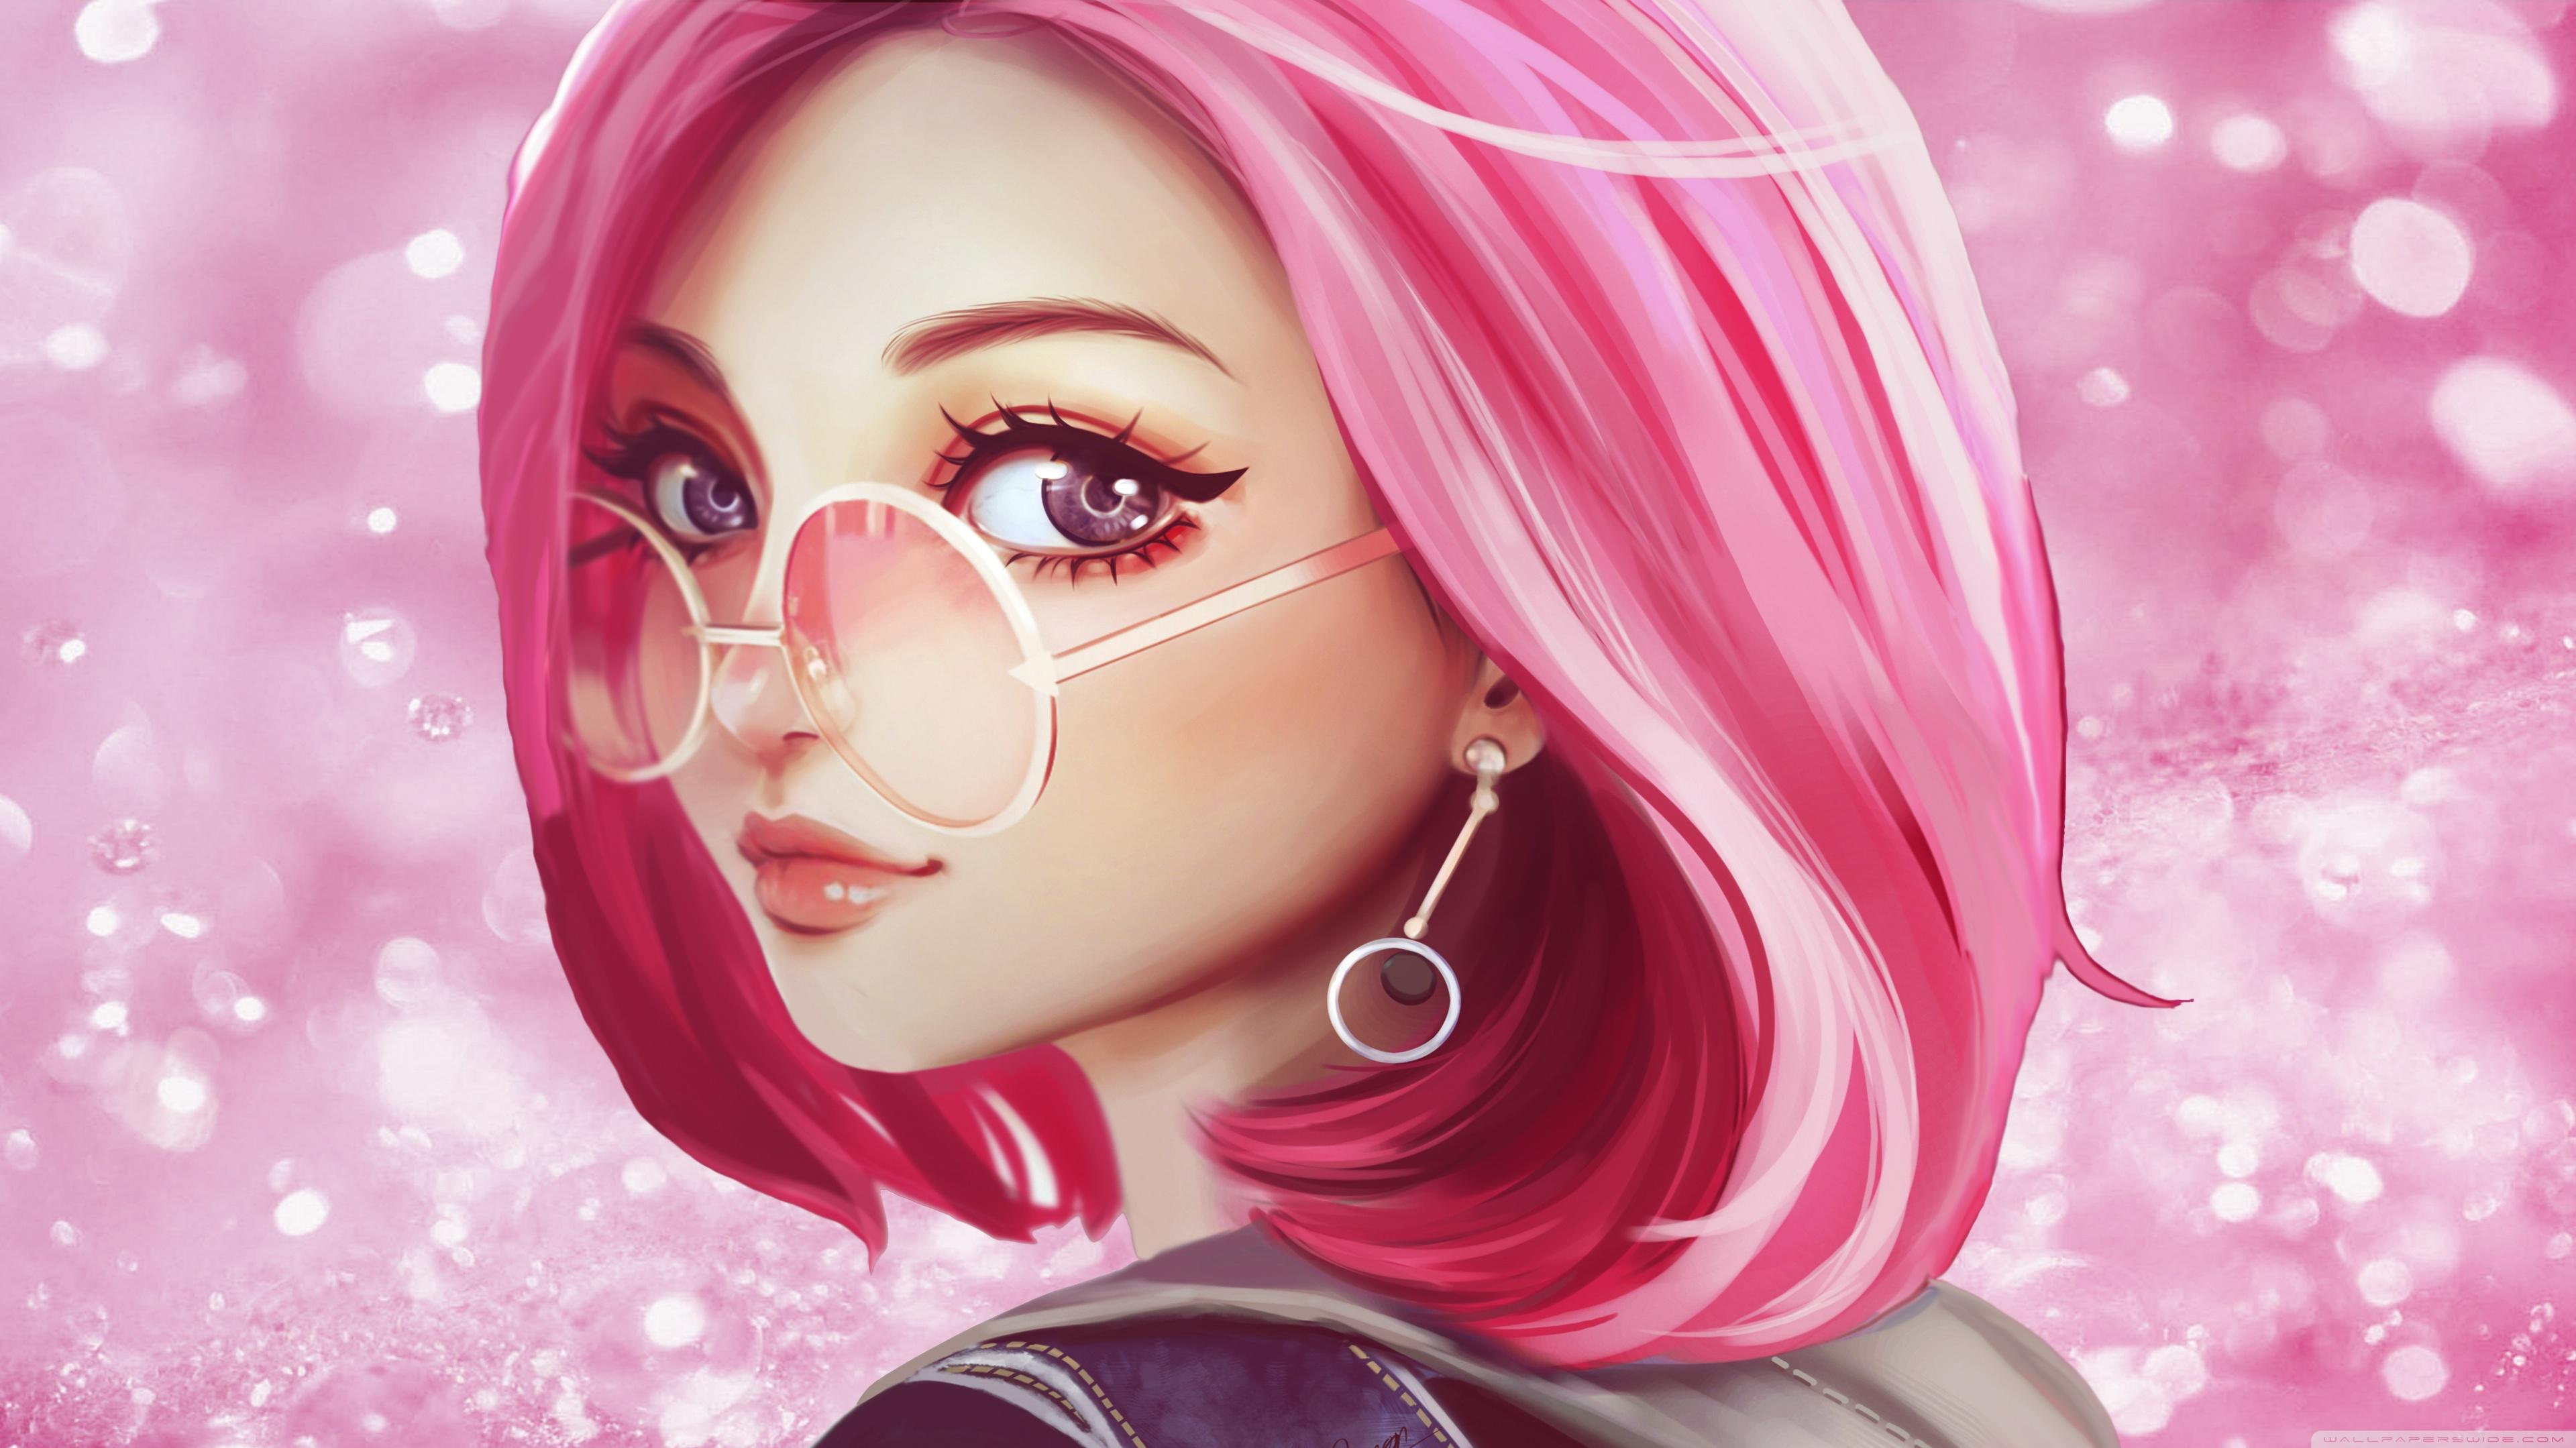 Cute Girl Pink Hair Sunglasses Digital Art Drawing Ultra HD